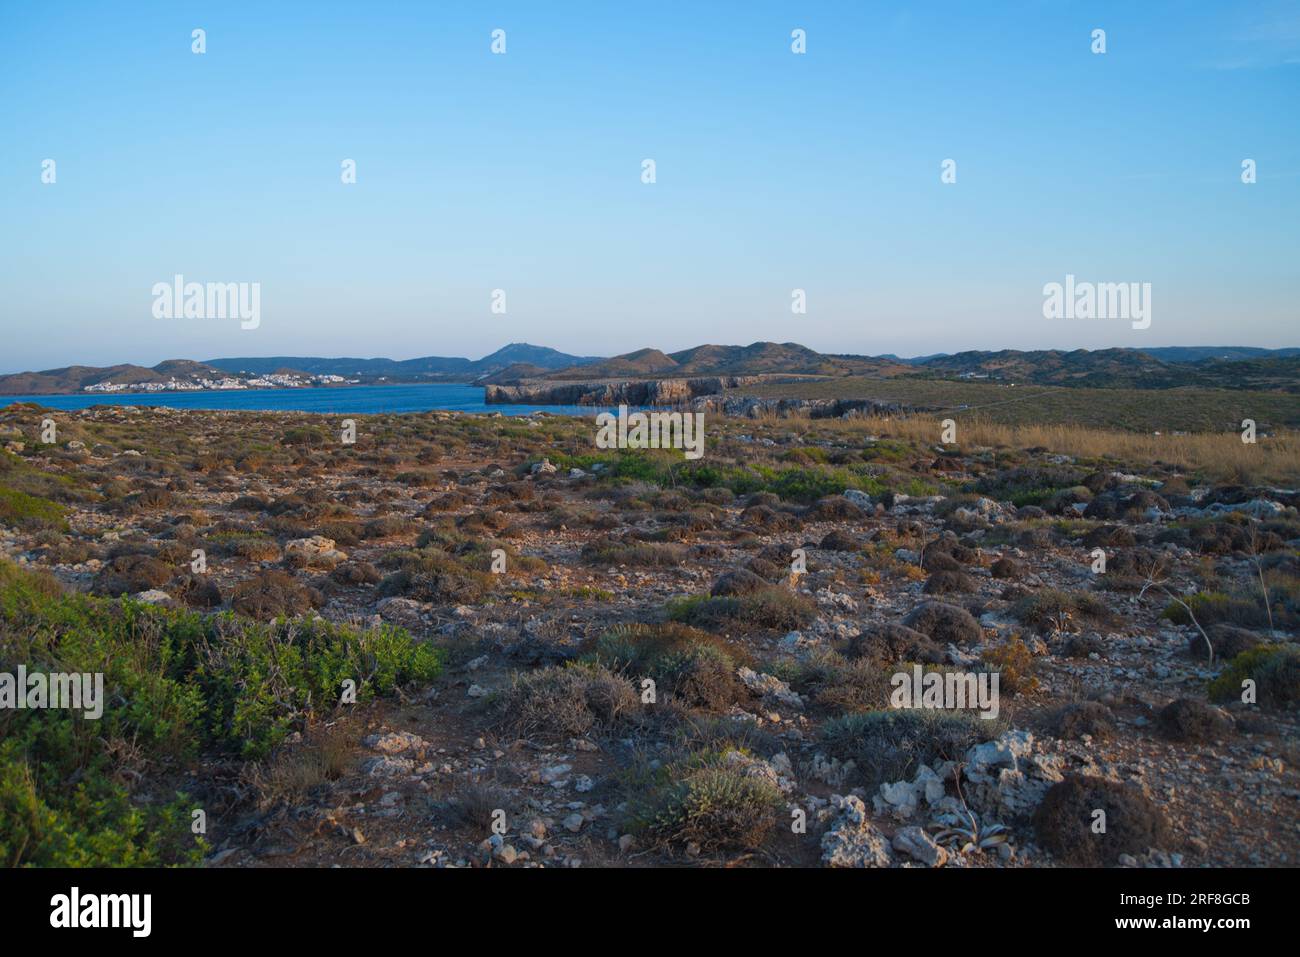 Landscape of the Mediterranean from Cabo de Caballería.  Paisaje del Mediterraneo desde el Cabo de Caballería. Stock Photo